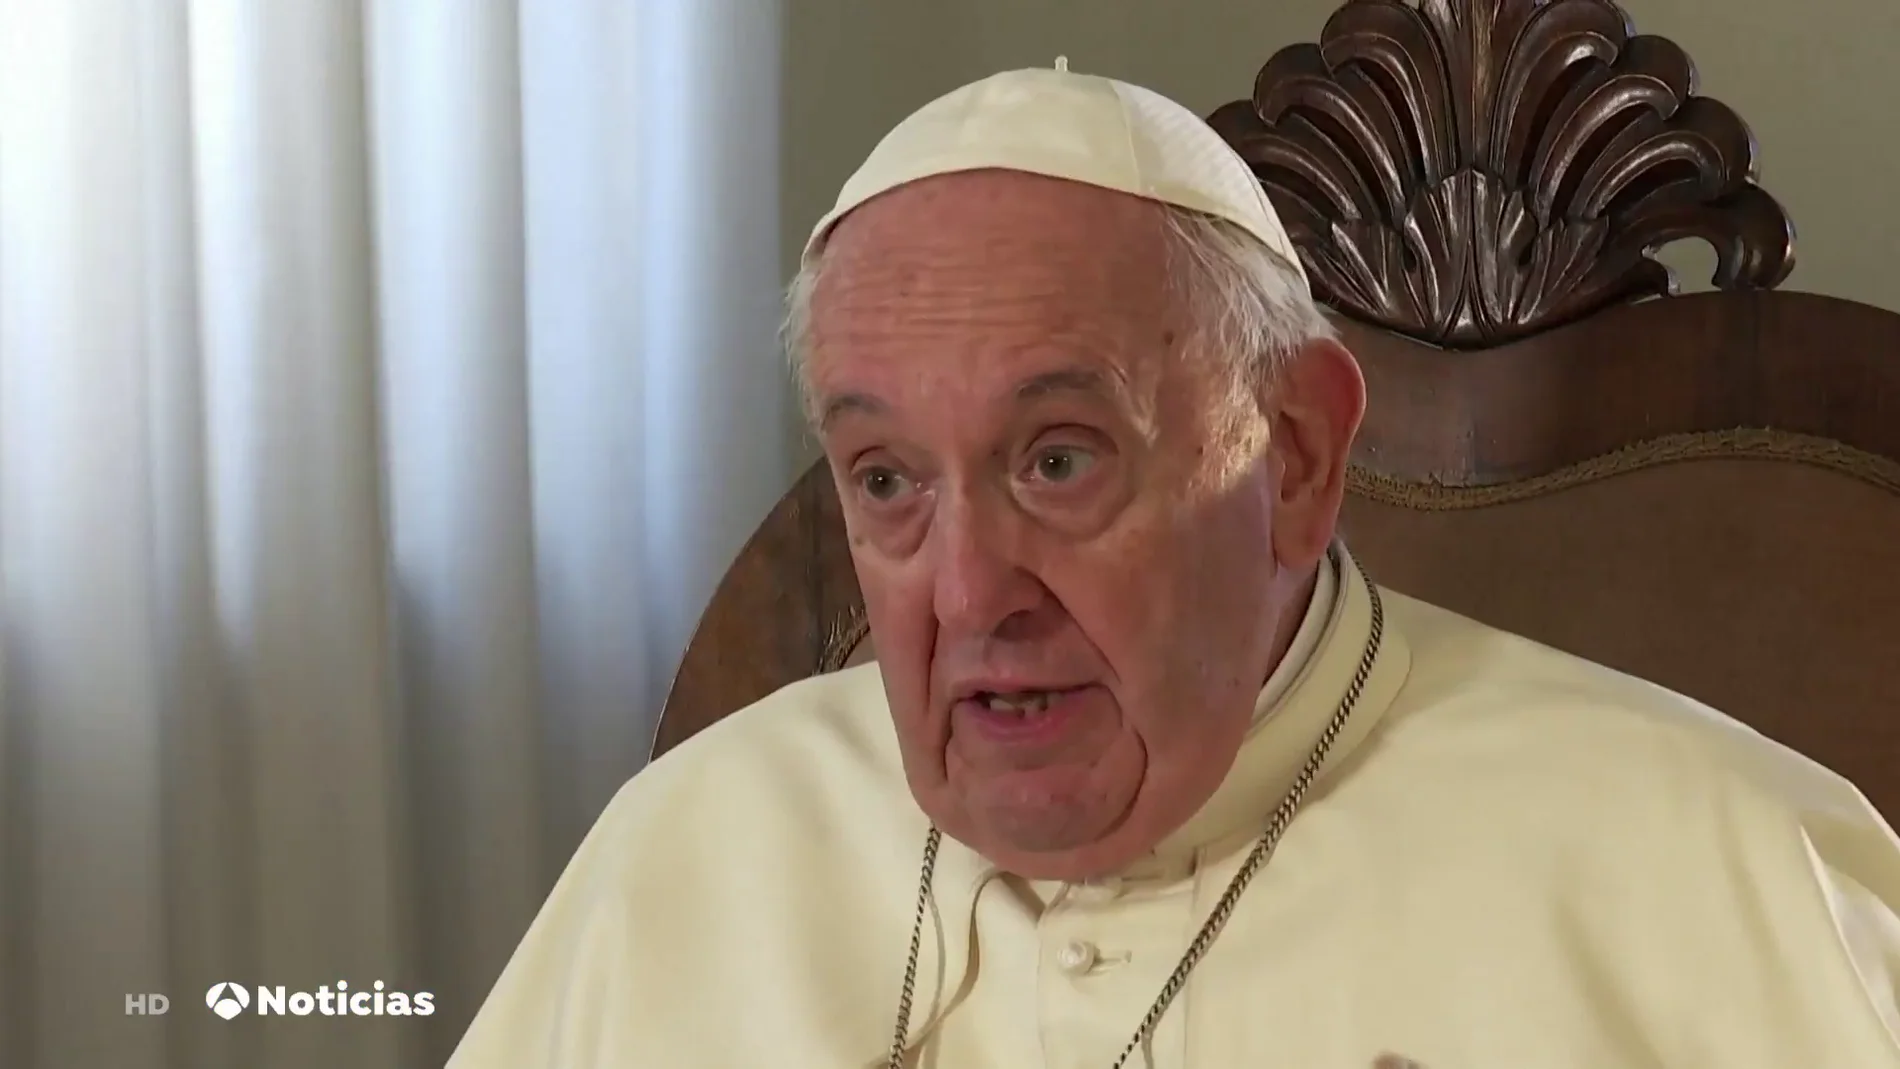 El Papa Francisco anuncia que dos mujeres trabajarán en el Dicasterio de los Obispos